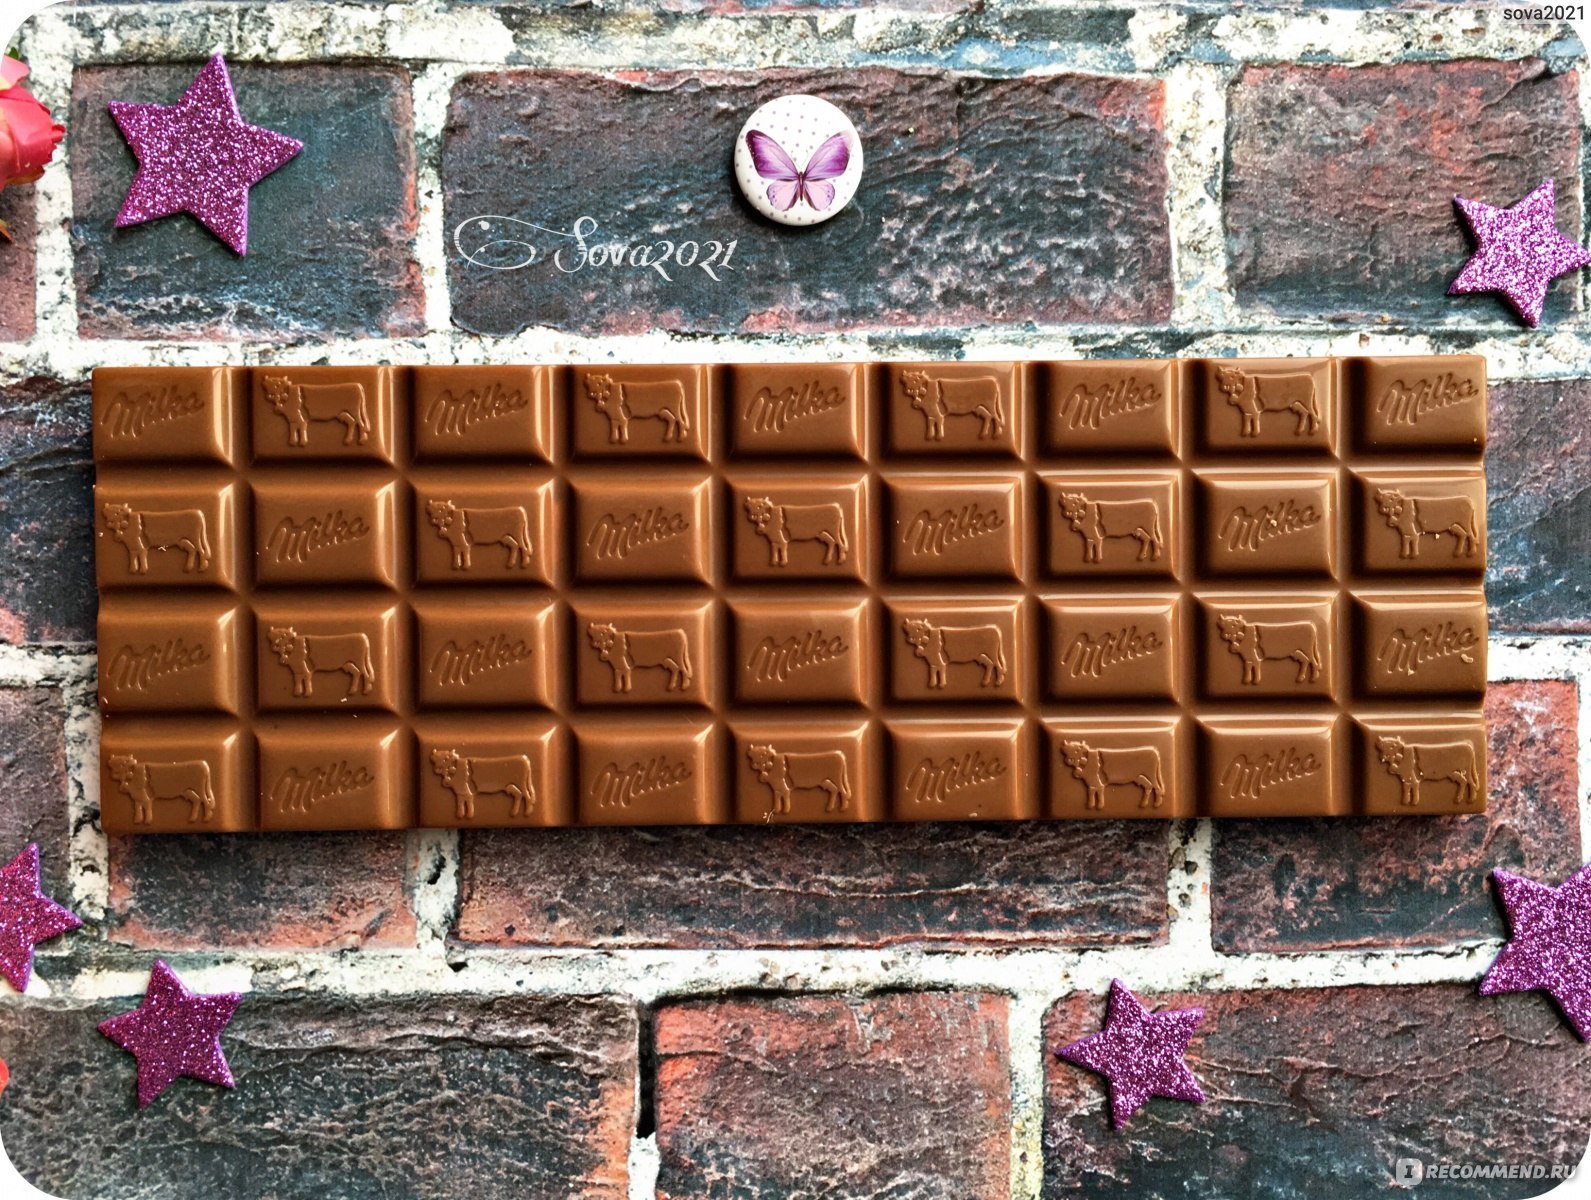 Вкусный шоколад купить. Плитка шоколада. Шоколадная плитка. Огромная шоколадная плитка. Большая плитка шоколада.